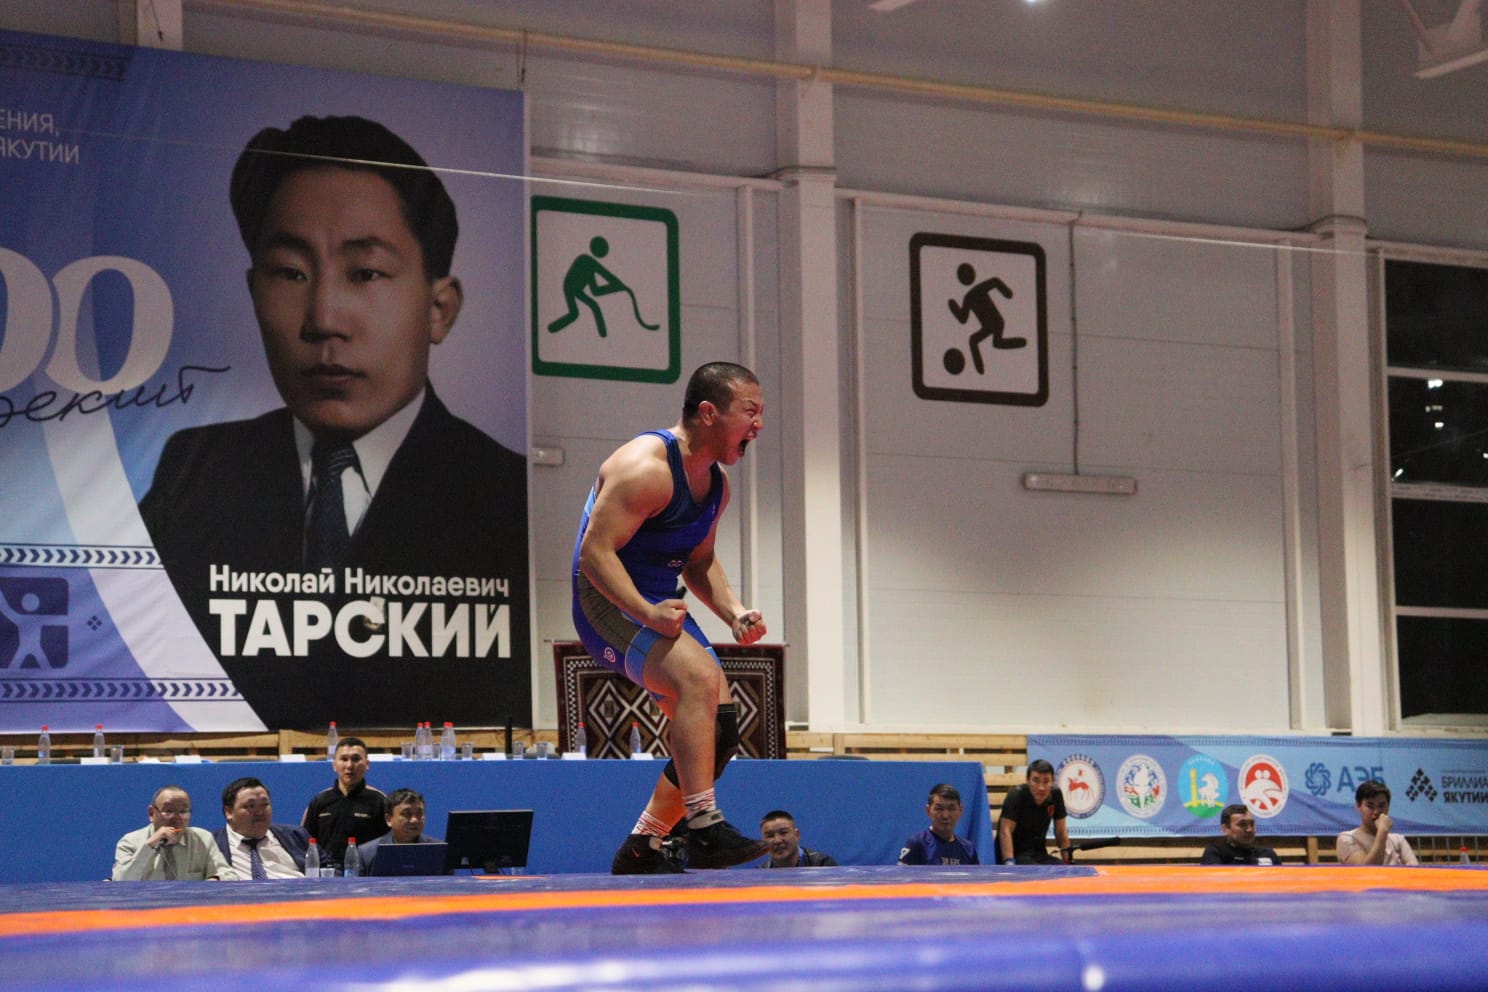 Определены все финальные пары чемпионата Якутии по вольной борьбе